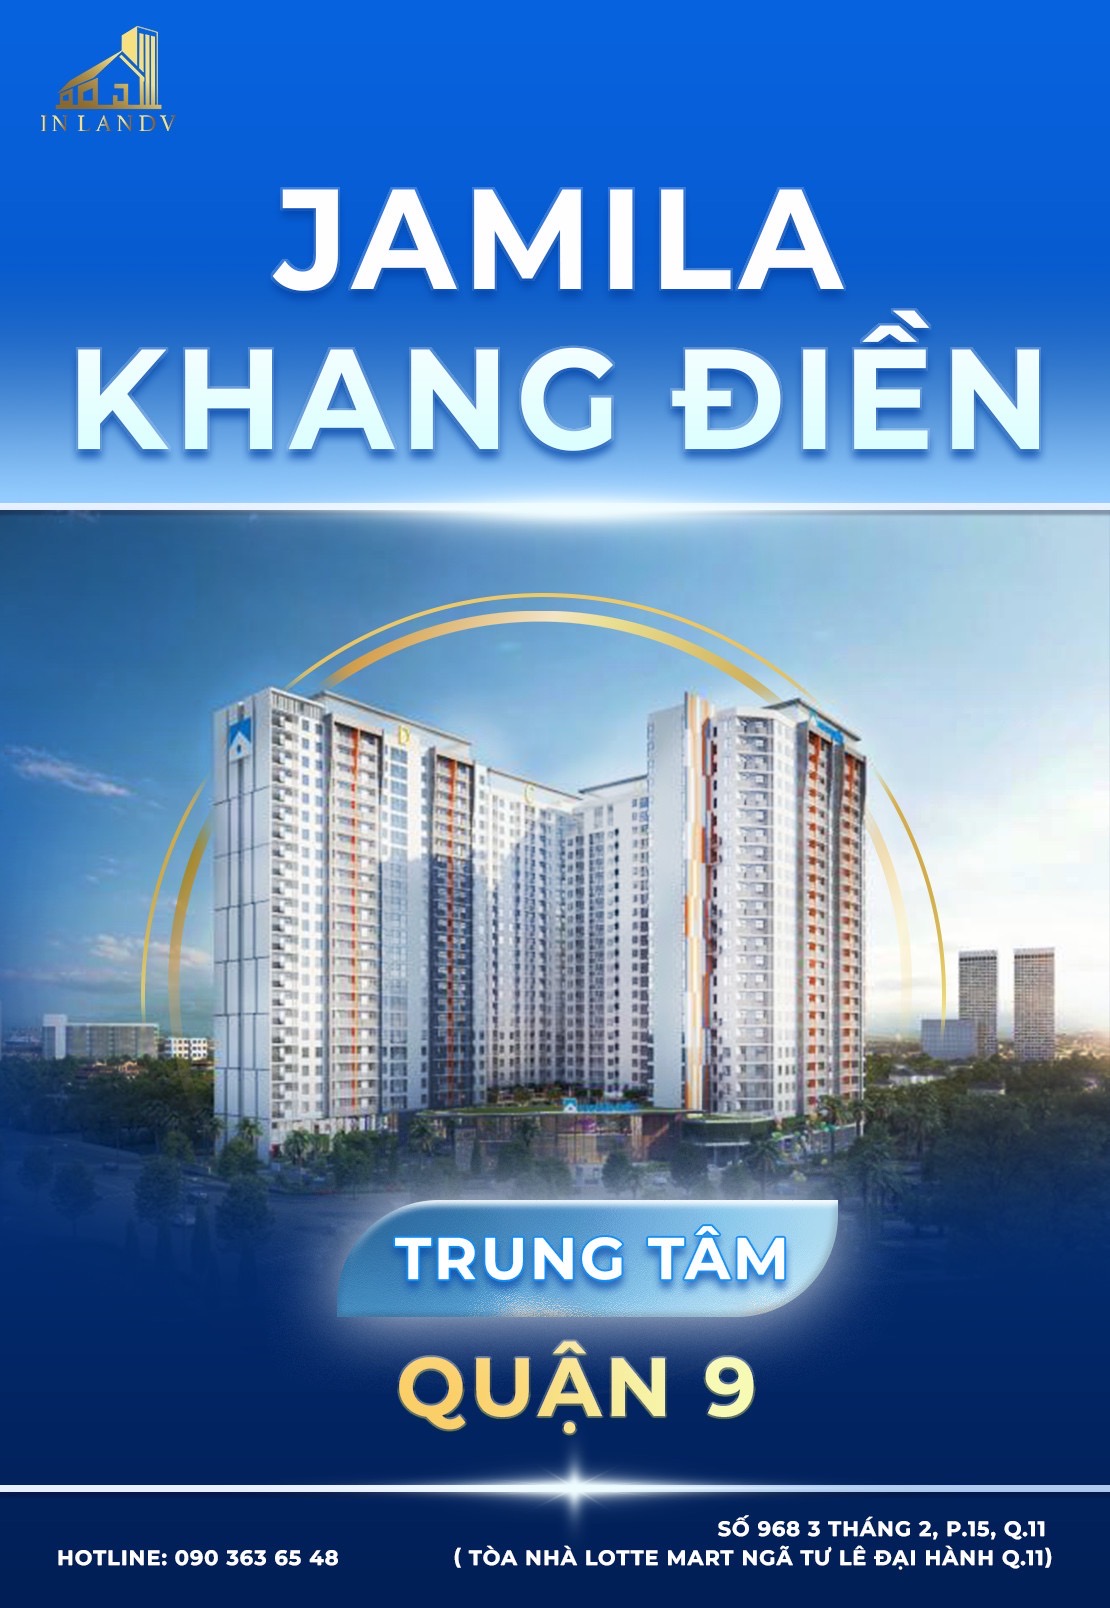 Jamila Khang Điền - Đường Đỗ Xuân Hợp - Thủ Đức, Hồ Chí Minh